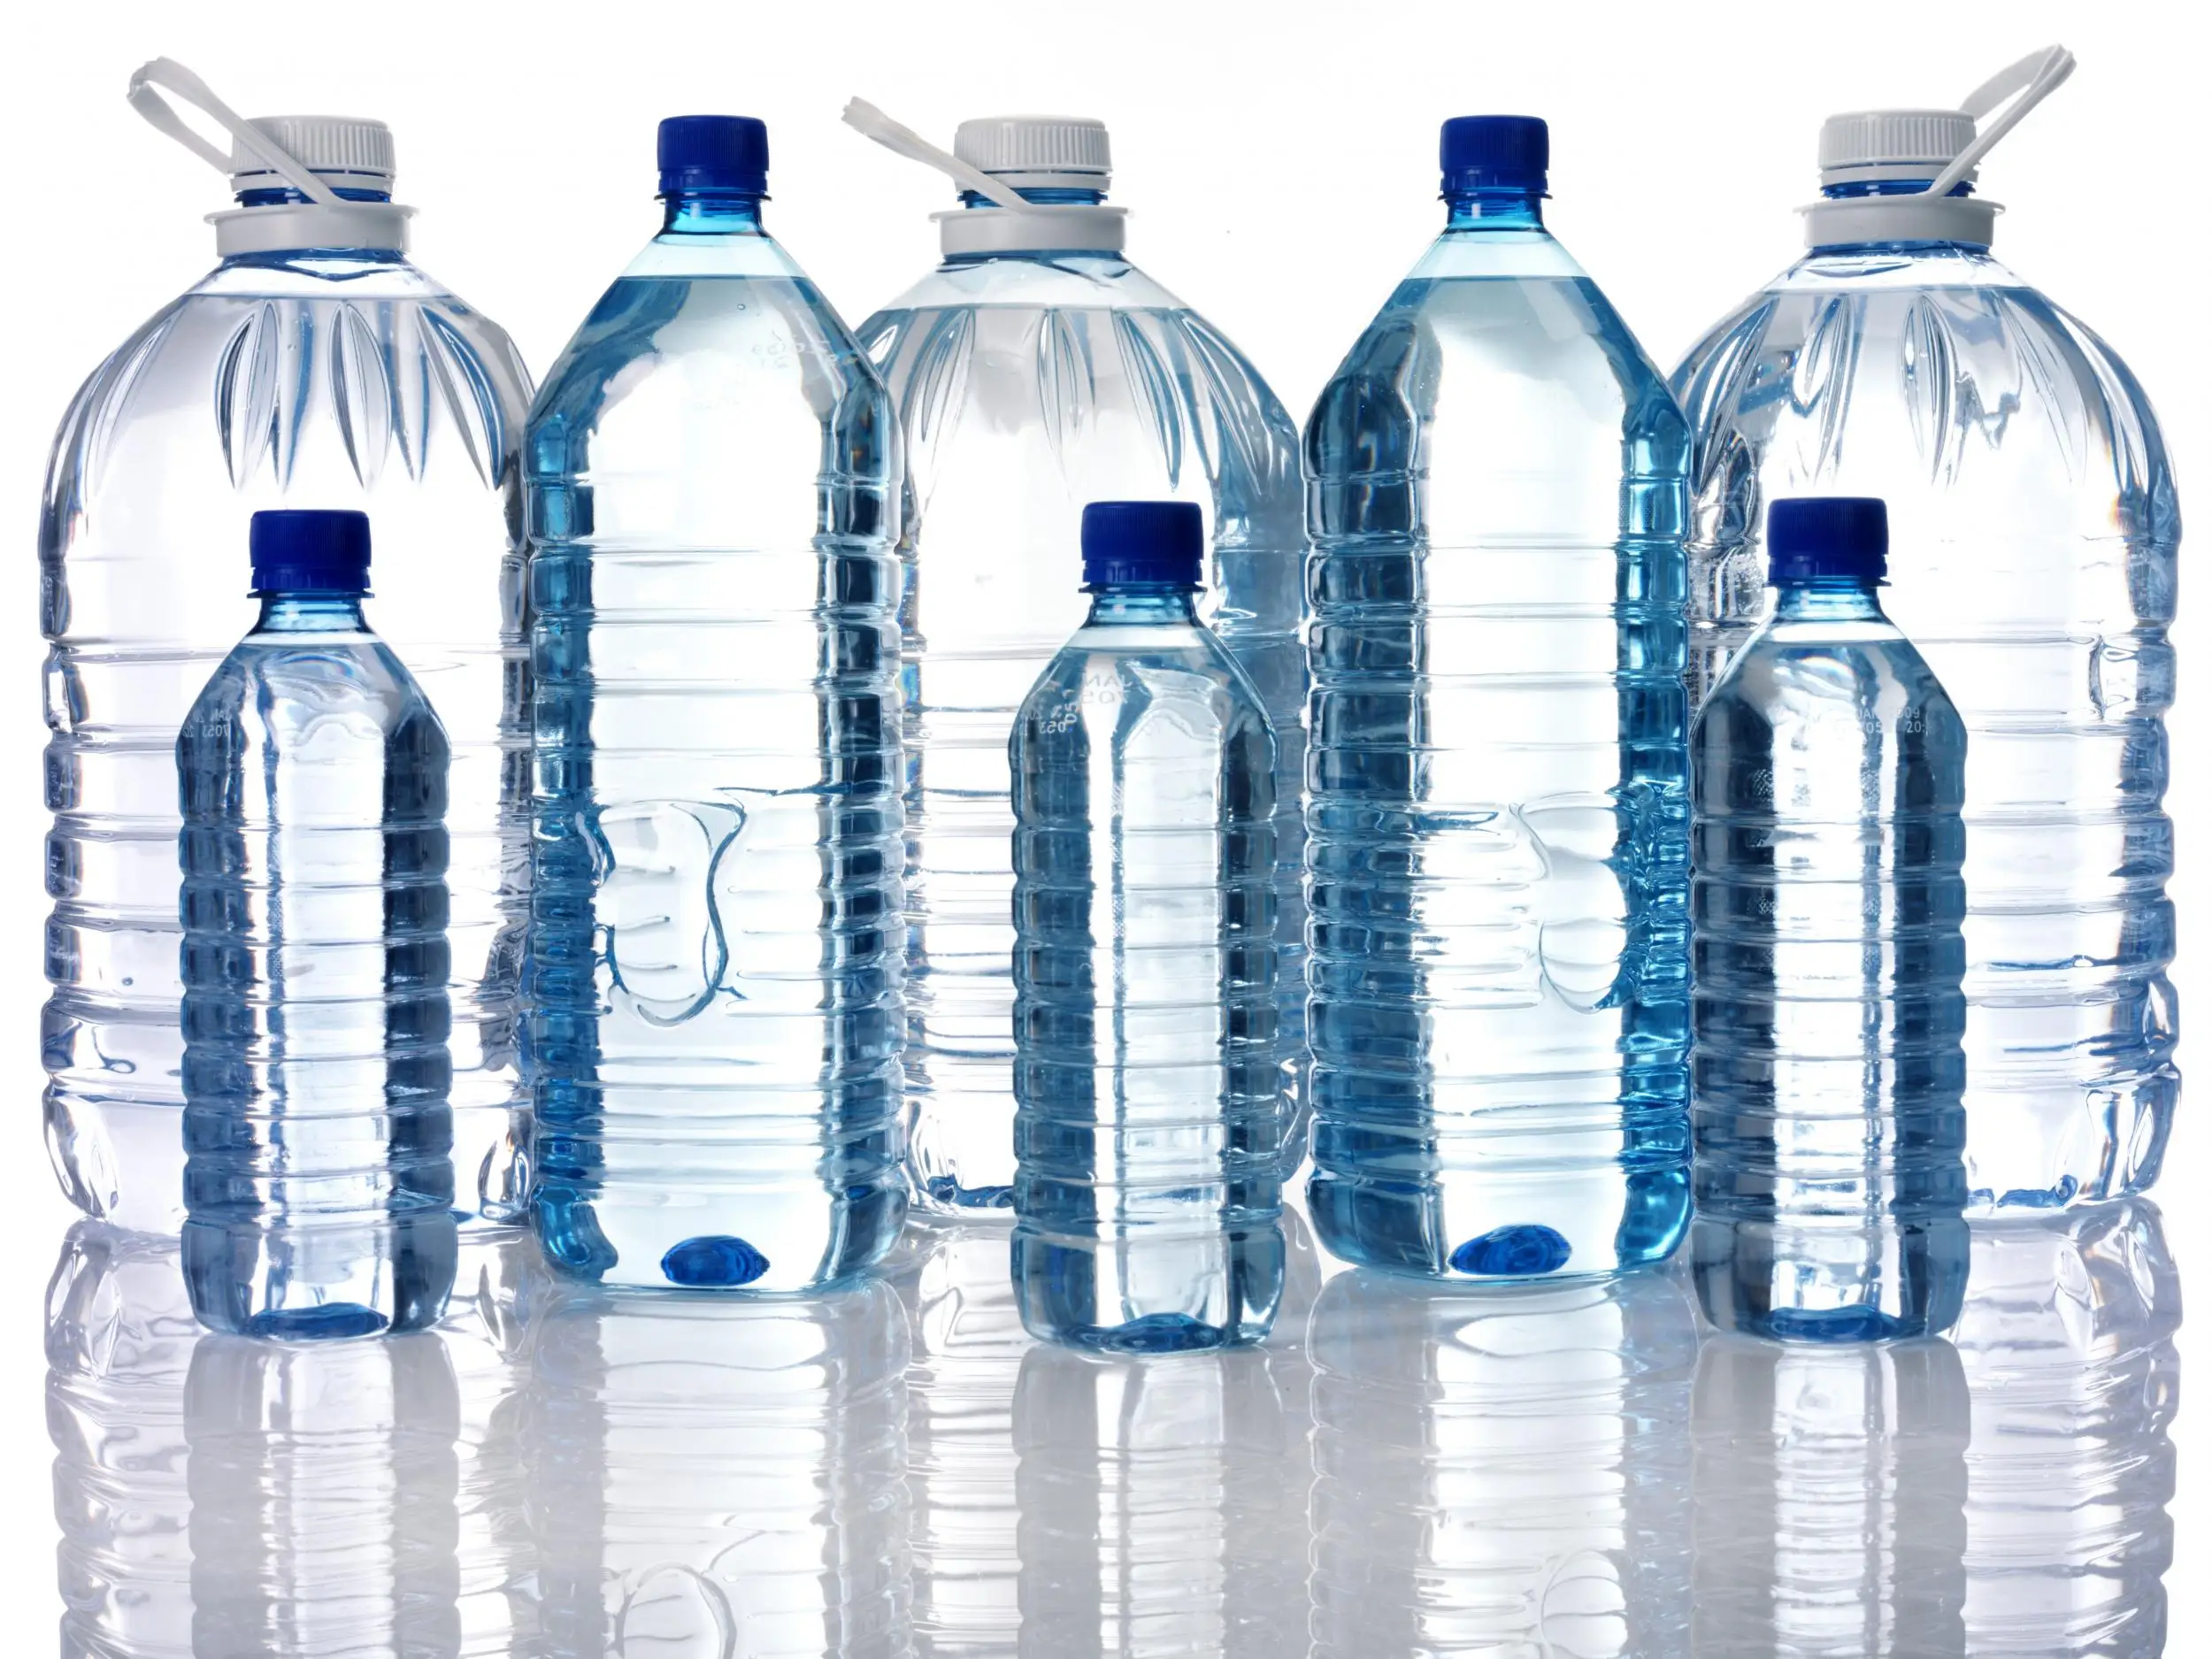 Хранение дистиллированной воды. Бутилированная вода. Бутылка для воды. Вода питьевая бутилированная. Вода в бутылях.